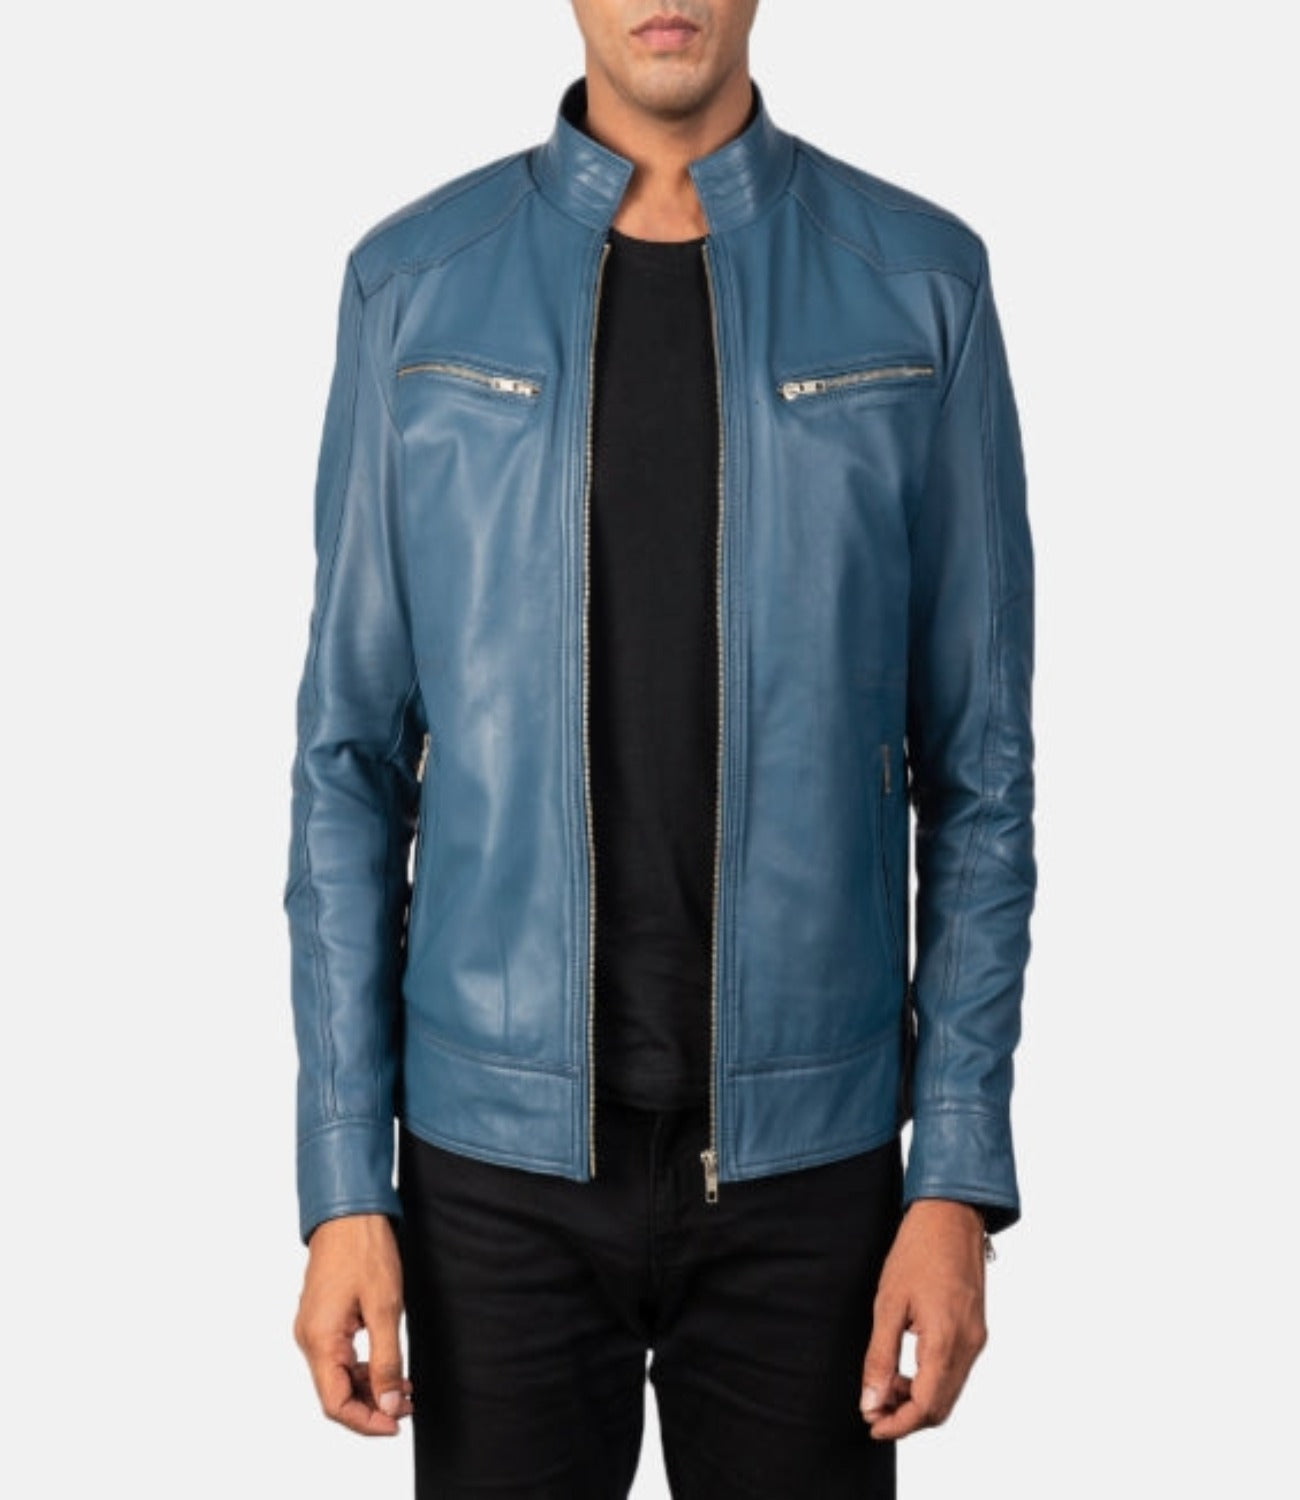 Men’s Blue Genuine Leather Biker Jacket